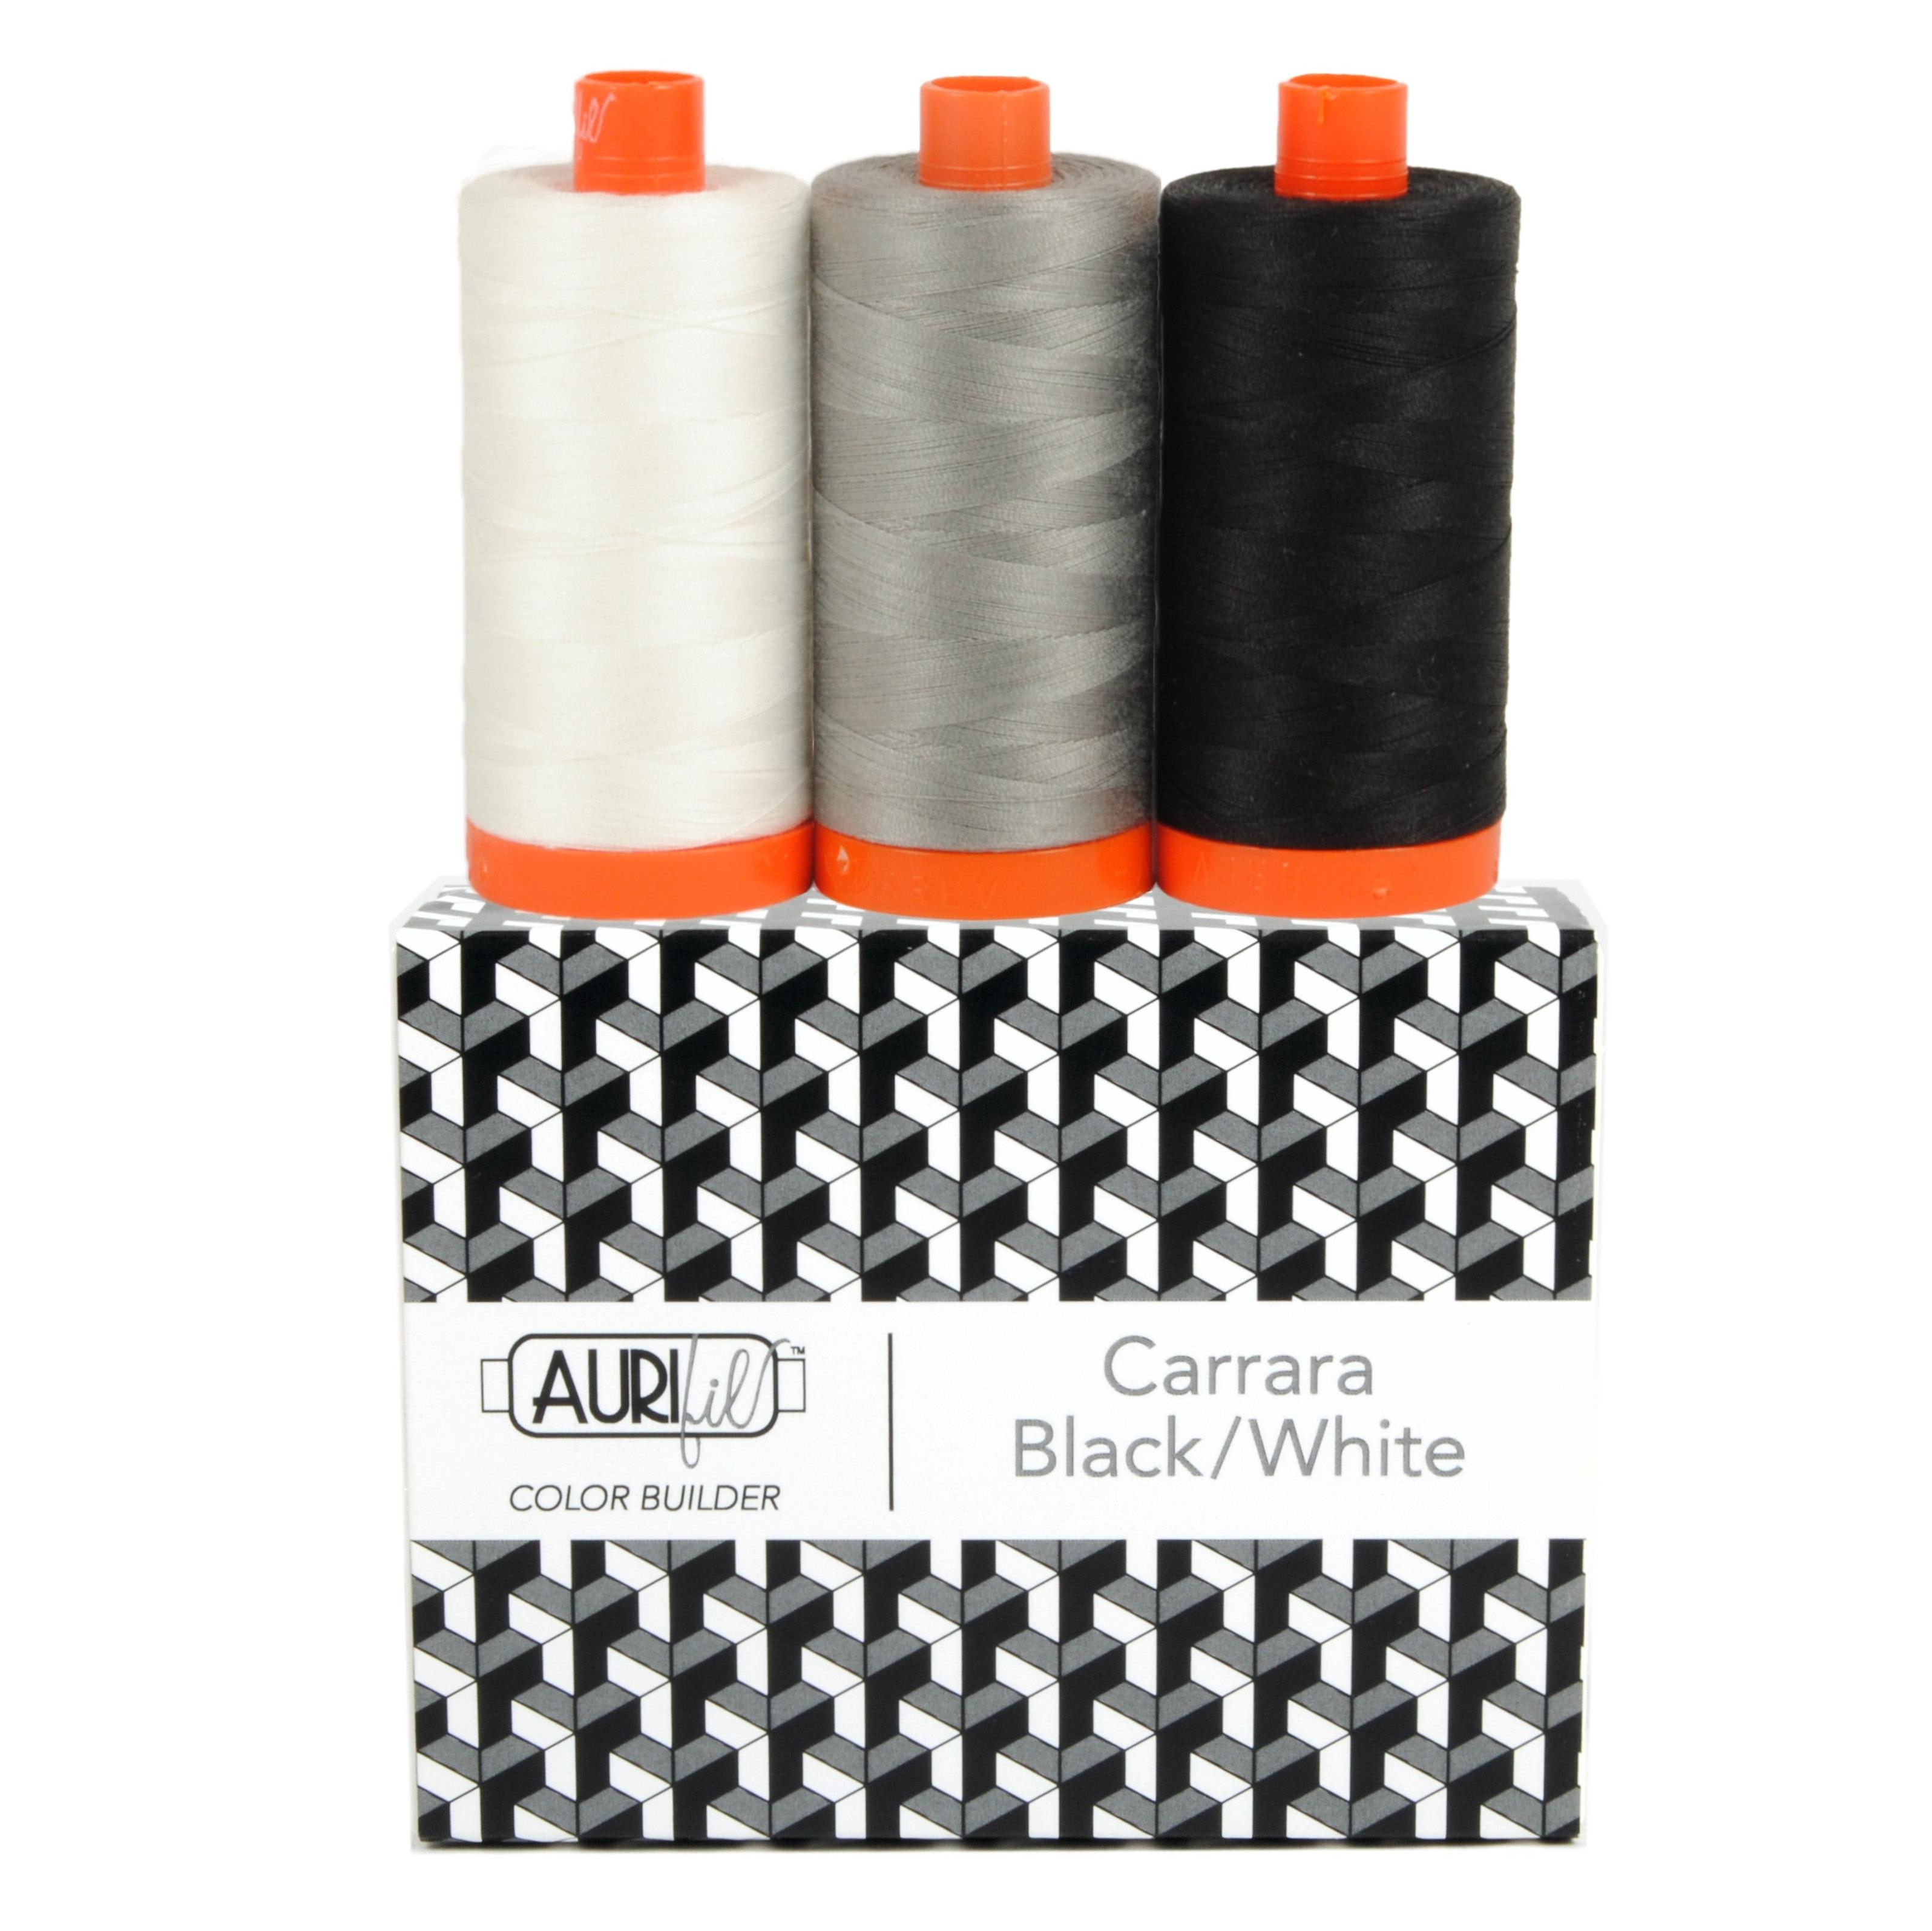 Color Builder 50wt Carrara Black and White 3 pc Set-Aurifil-My Favorite Quilt Store